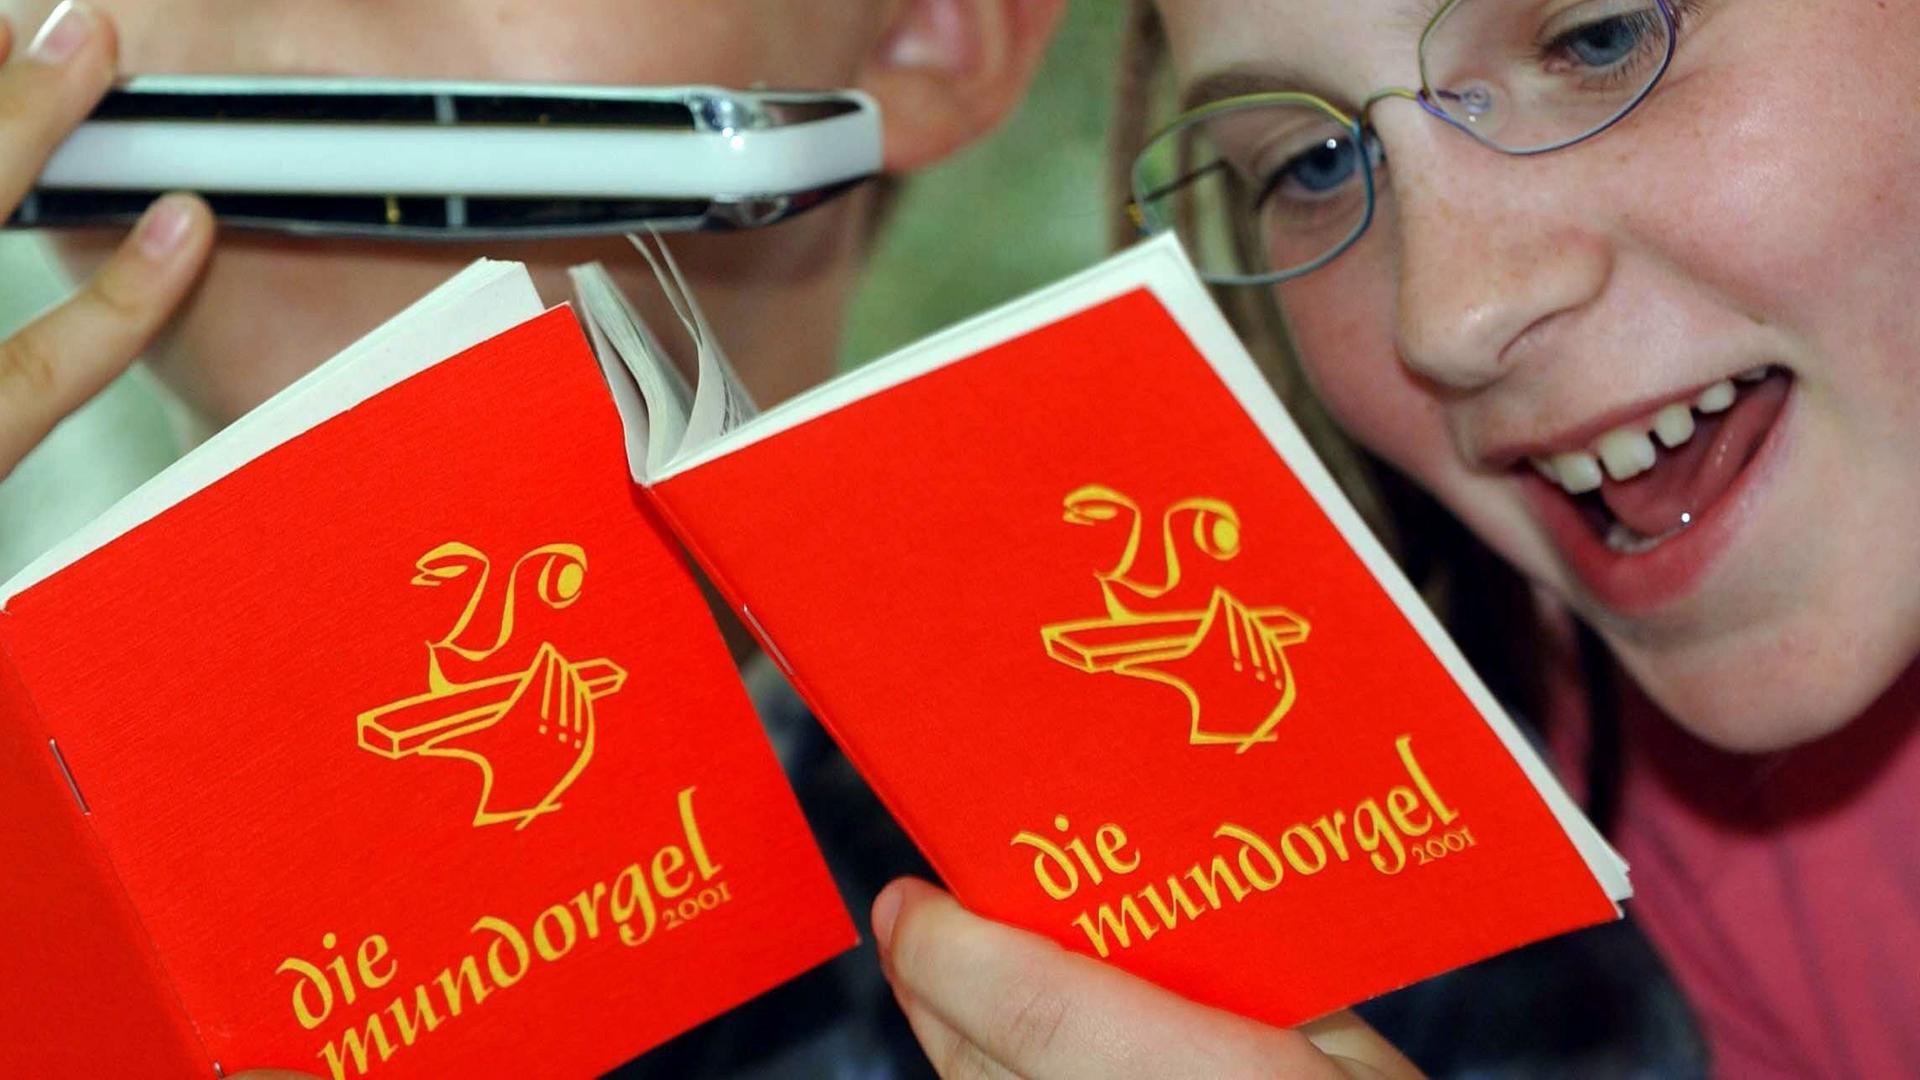 Ein Mädchen singt und ein Junge spielt Mundharmonika zu Liedern aus der "Mundorgel".